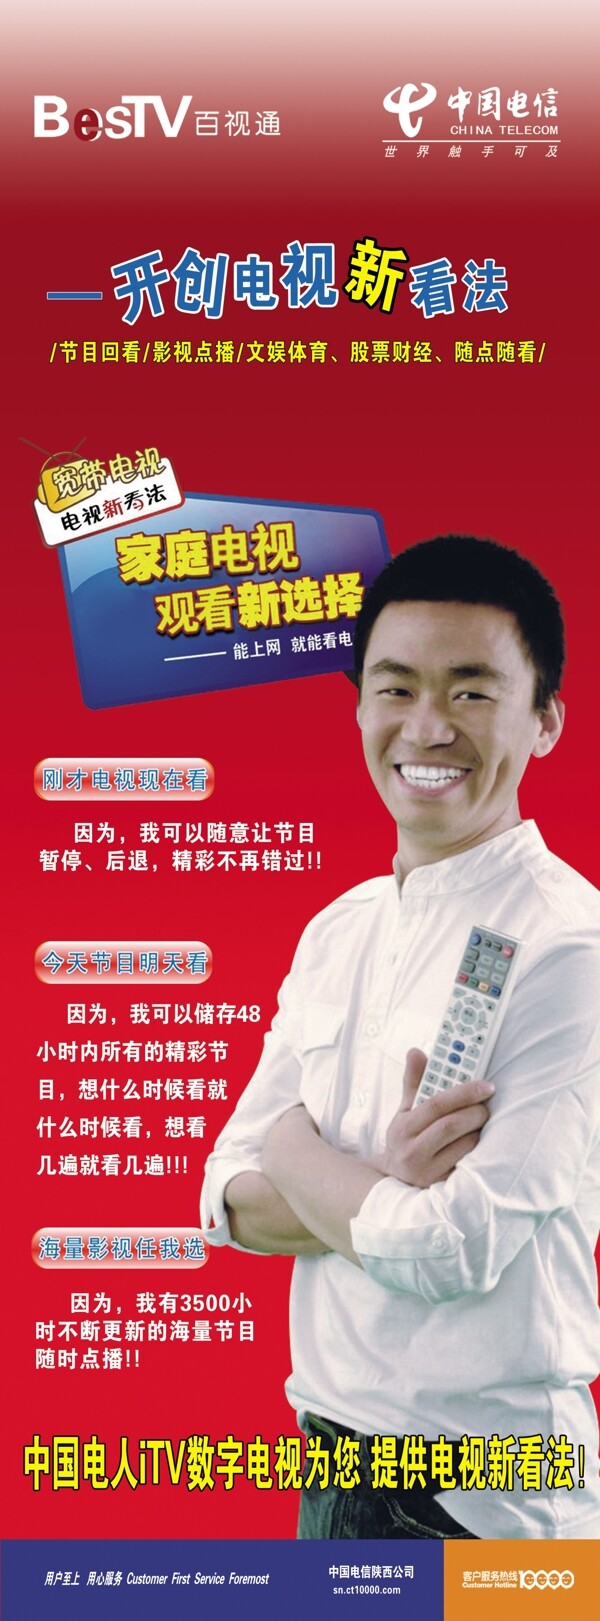 中国电信iptv宣传海报图片